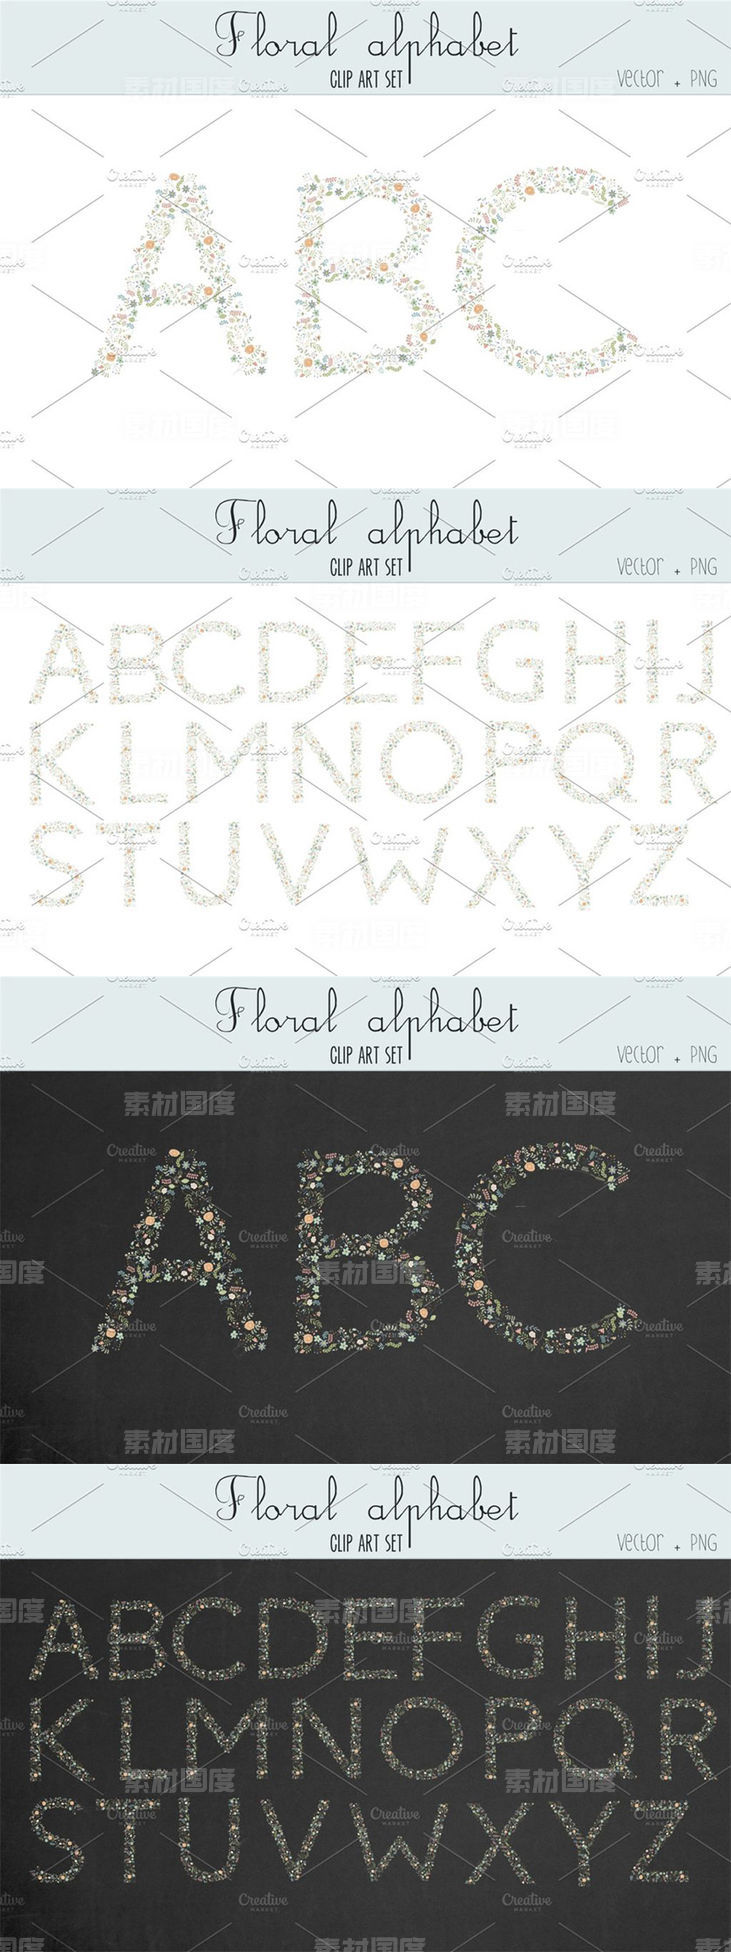 漂亮的手绘水彩花卉字母表剪贴画 Floral alphabet clip art